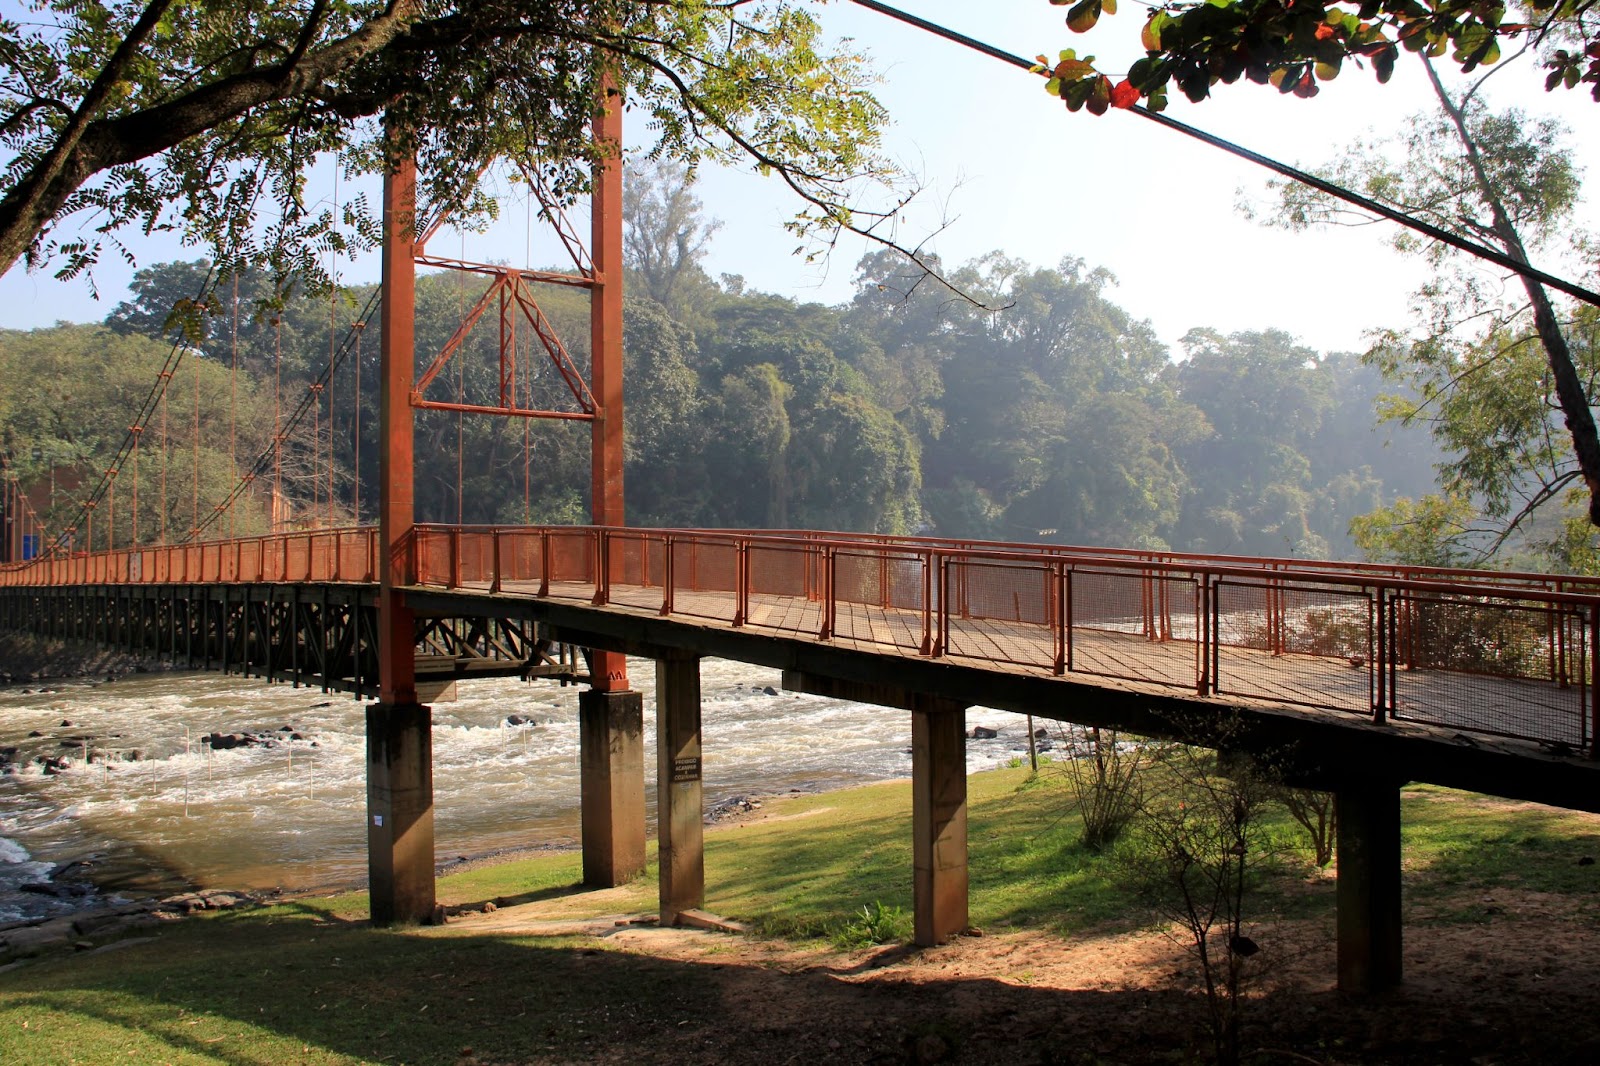 Ponte que passa sobre o Rio Piracicaba, SP. A grande estrutura de metal vermelha está cercada por trechos de mata nativa